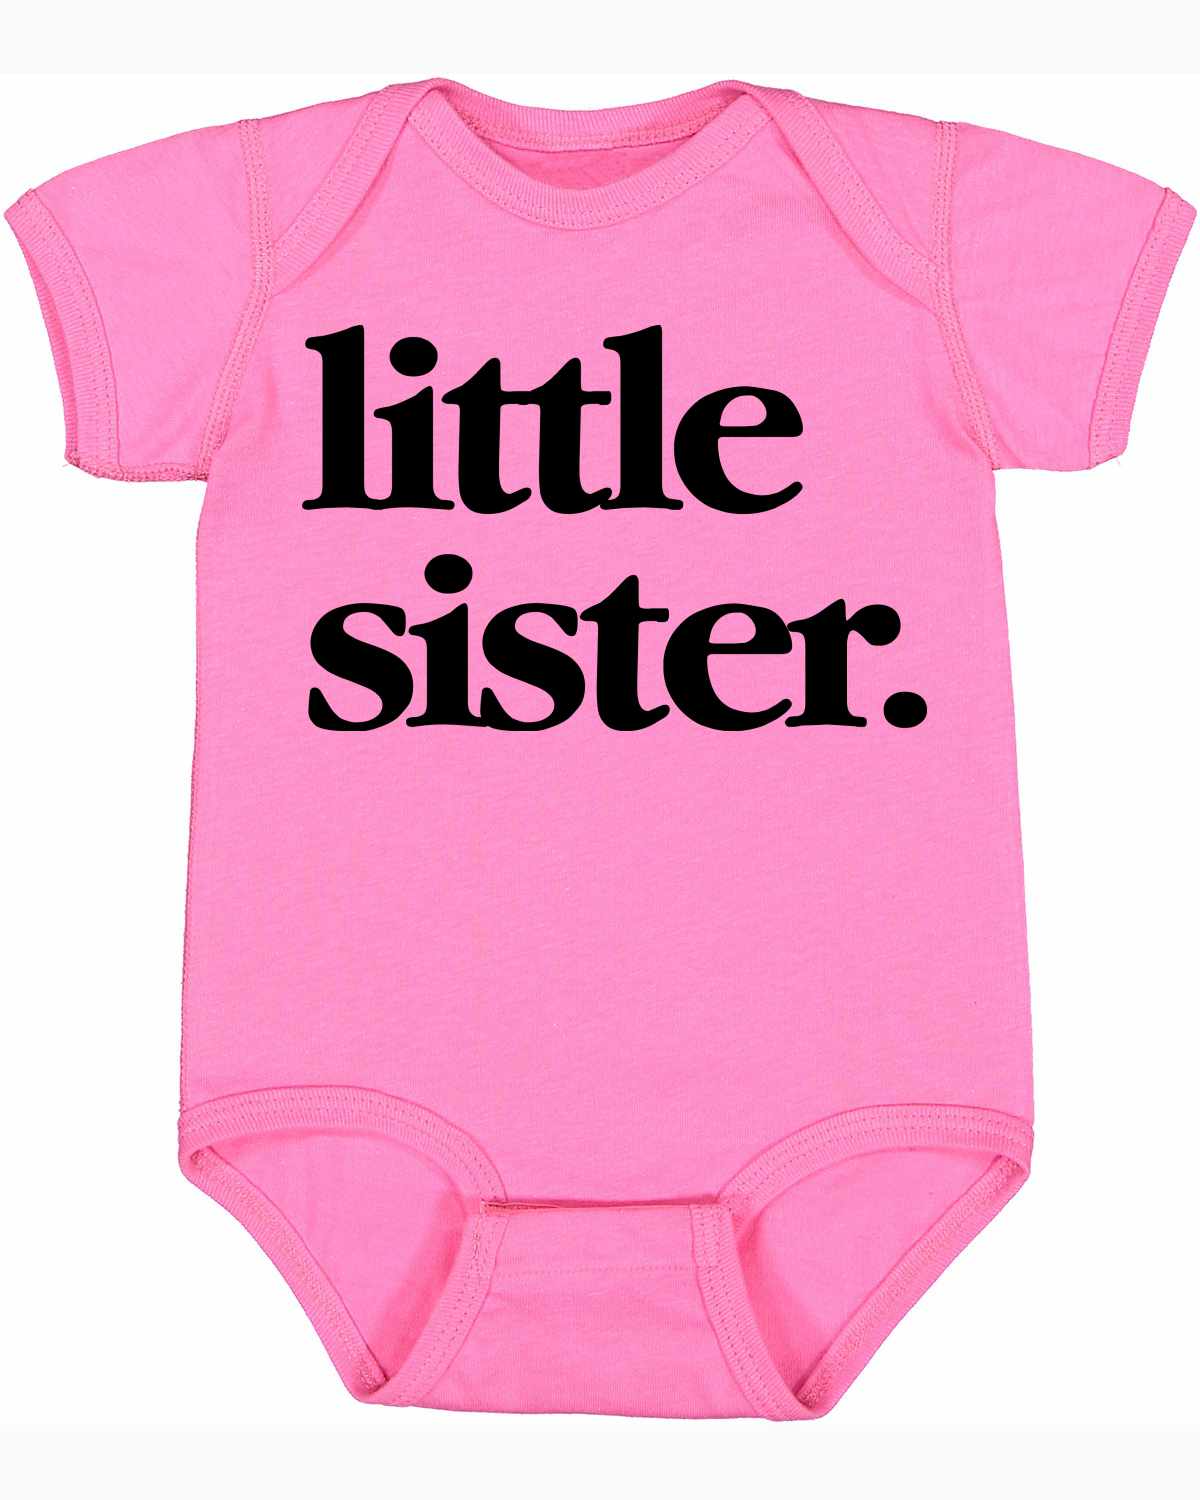 Little Sister on Infant BodySuit (#1321-10)